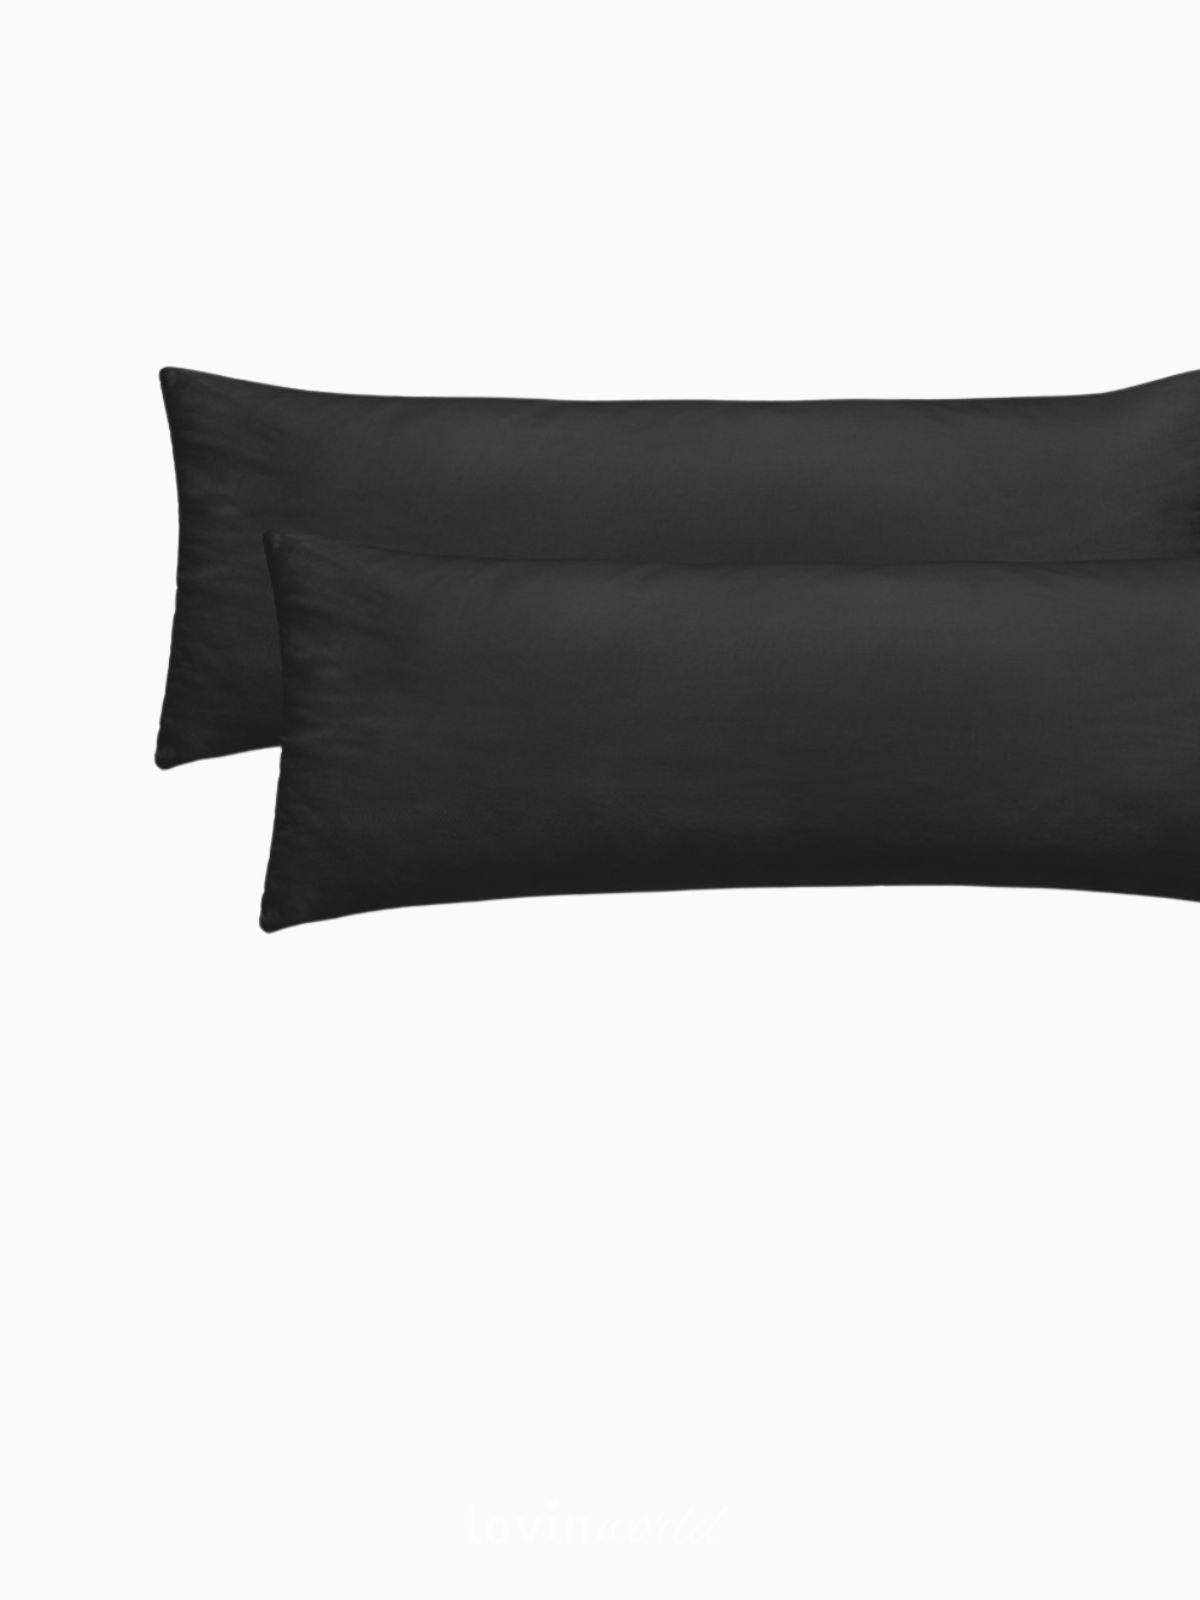 2 Federe per cuscino Amber in colore nero 40x200 cm.-2